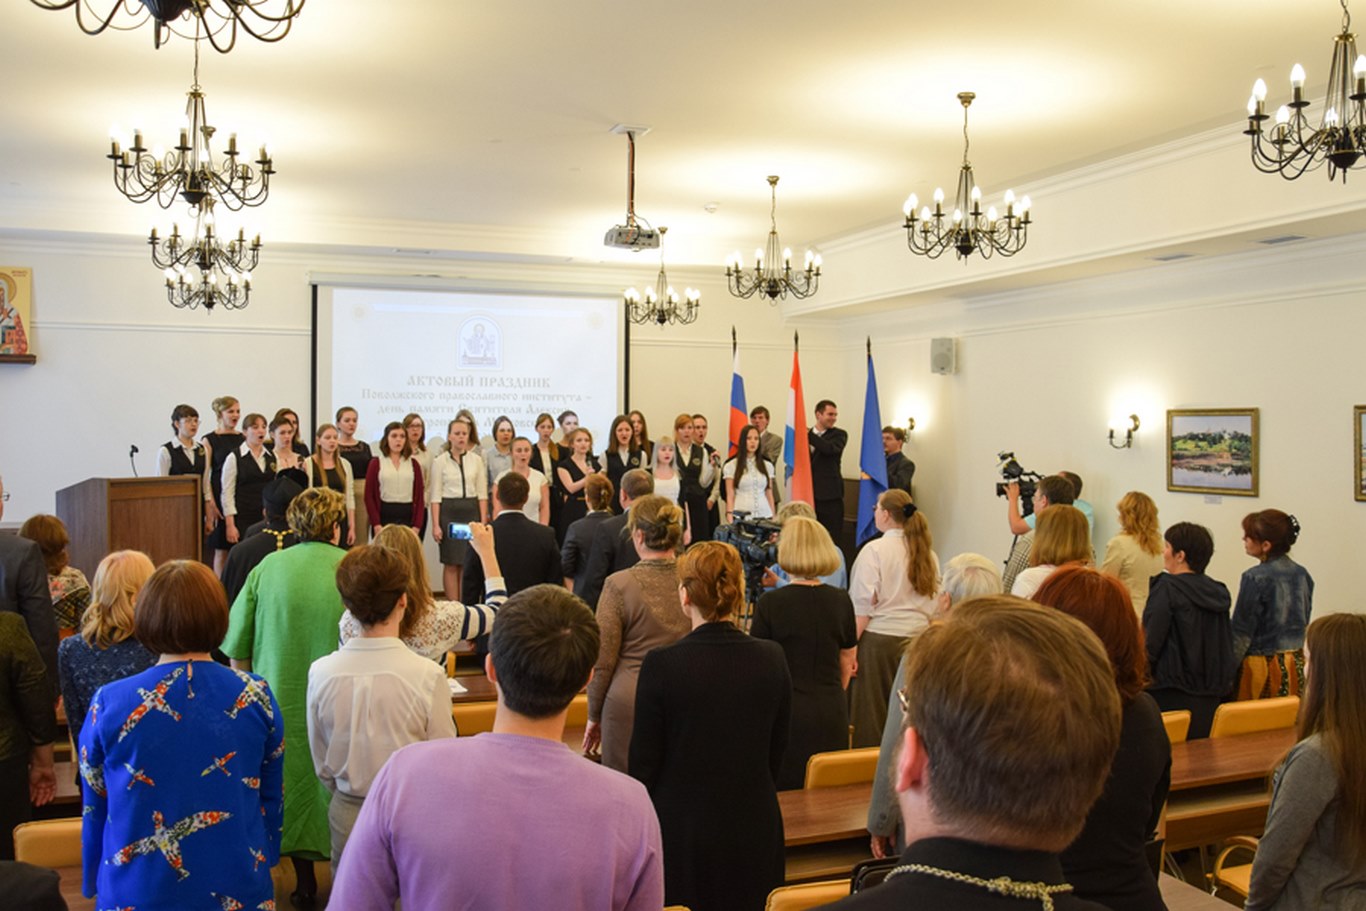 В Поволжском православном институте пройдет Актовый праздник